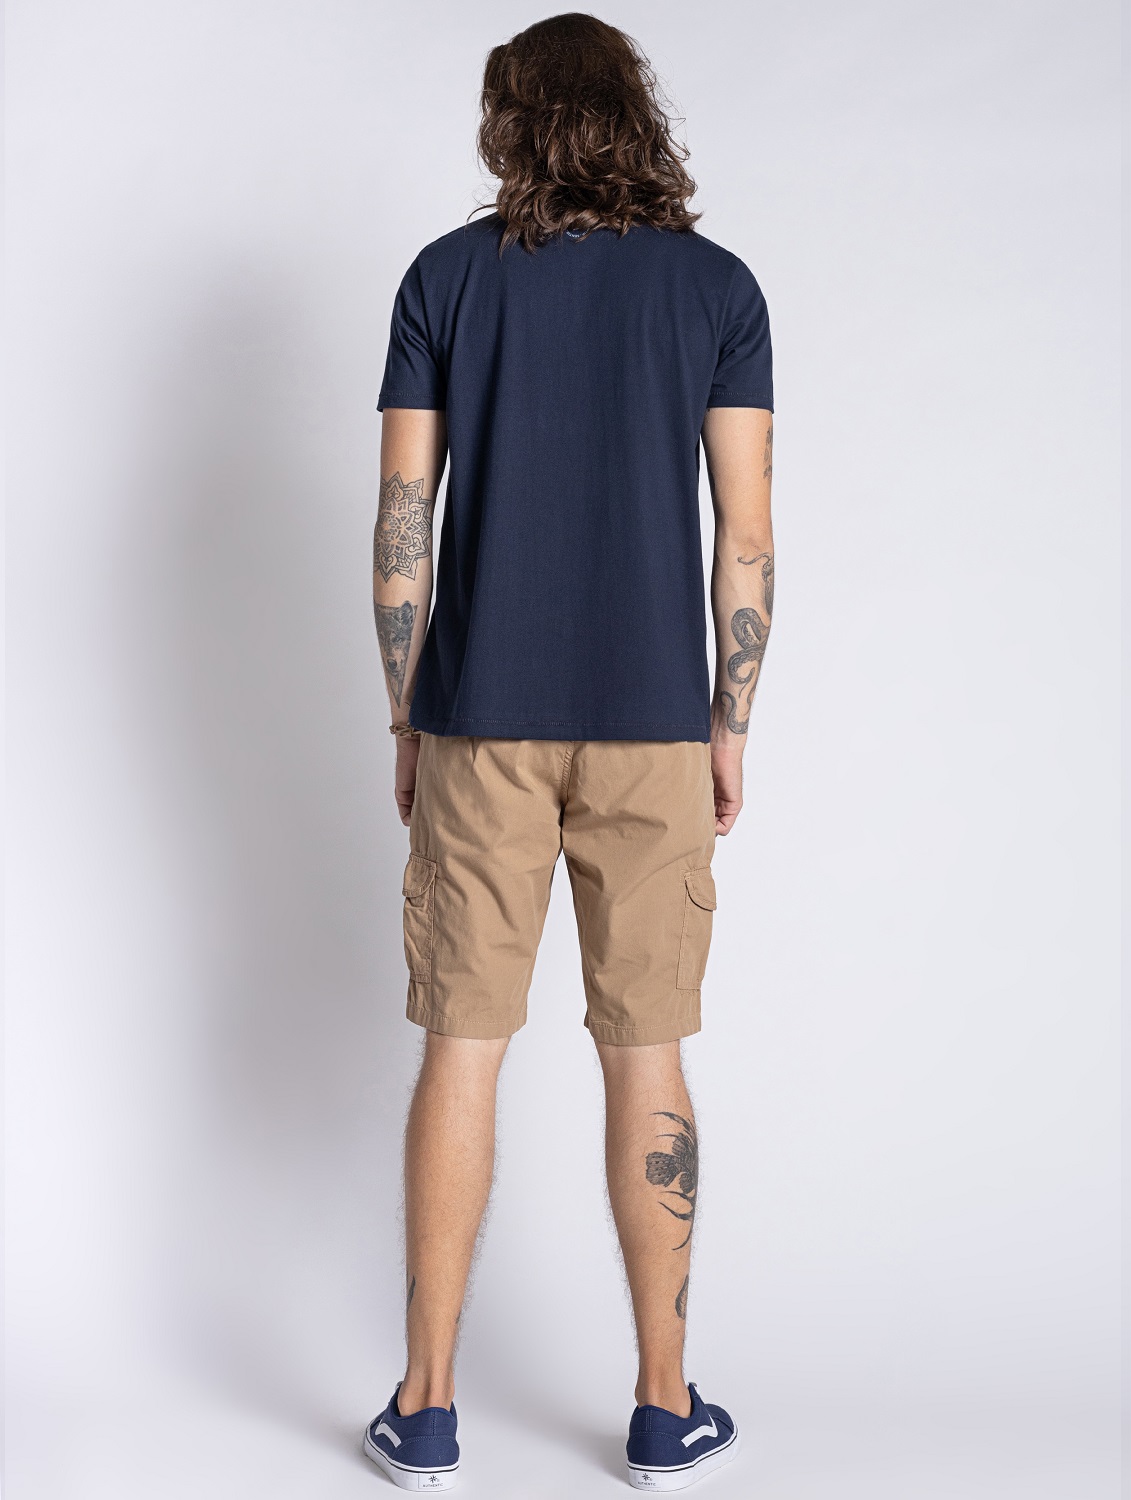 Camiseta em Algodão Masculina Azul Marinho - OVBK